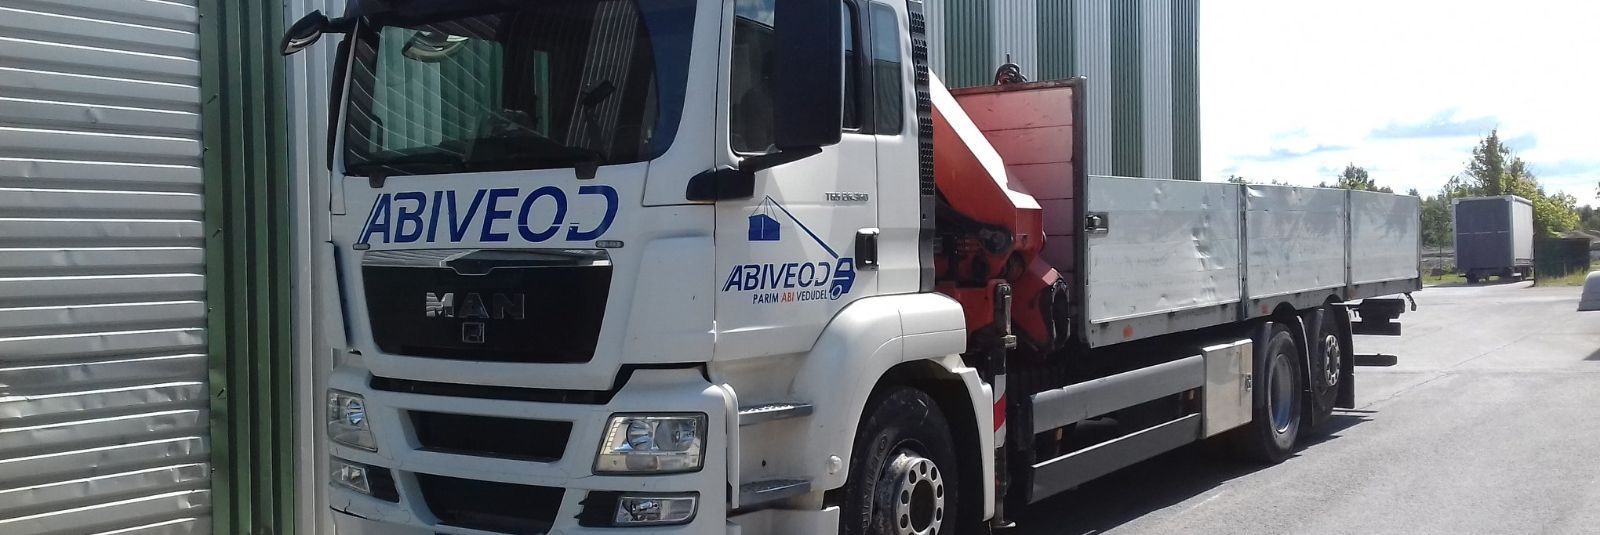 Tere tulemast ABIVEOD OÜ-sse, kus logistikateenuste maastikul oleme meie teie kõige usaldusväärsem partner. Oleme pühendunud mitmekülgsete ja kvaliteetsete logi